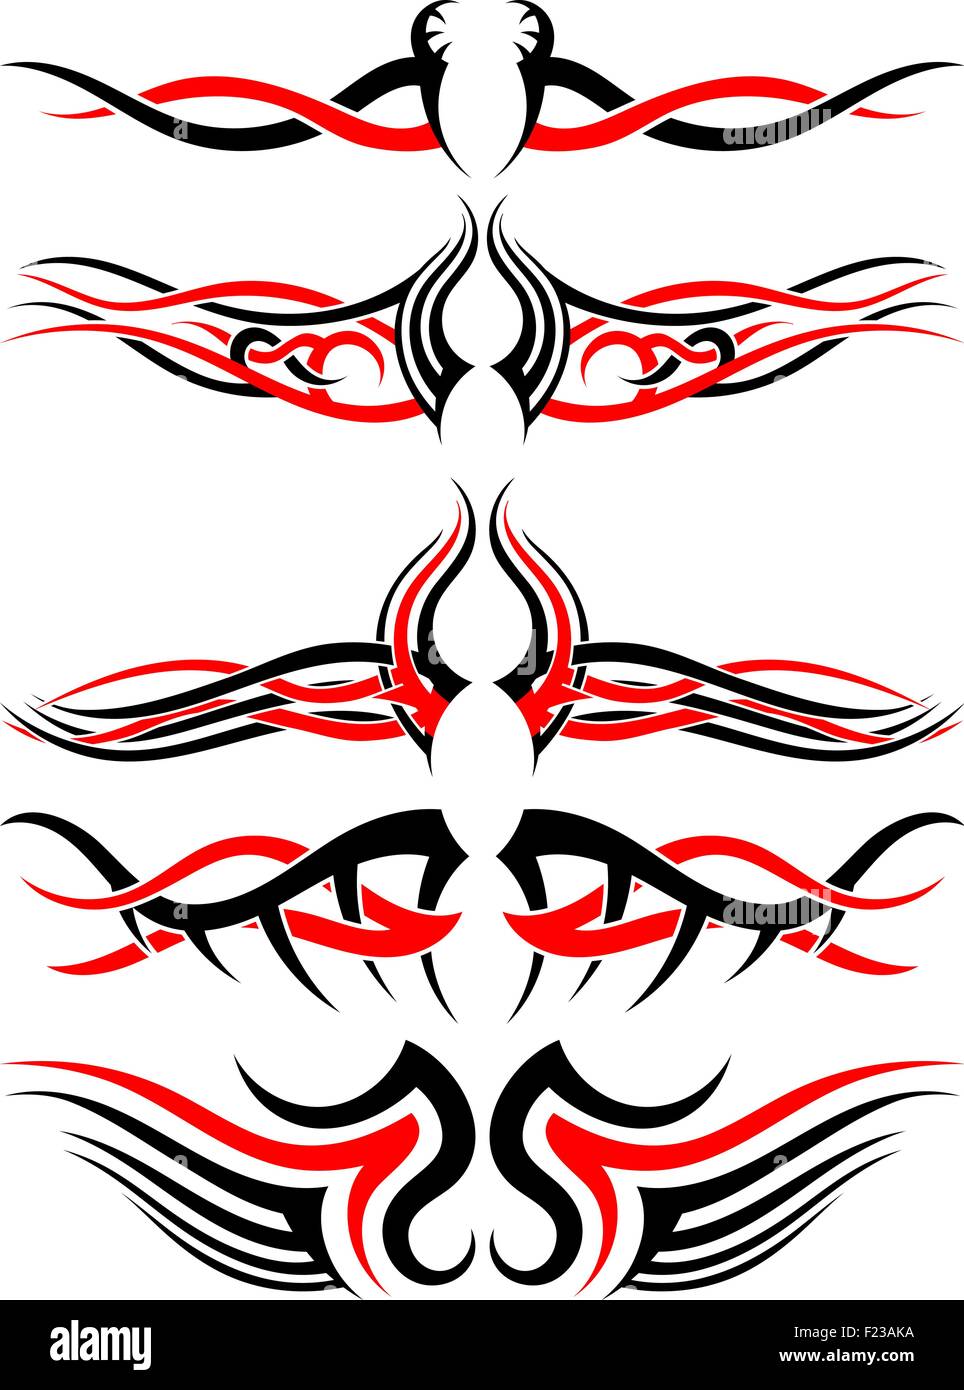 Ensemble de tatouages autochtones tribales en noir et rouge. Conception souple élégante sur fond blanc. Vector Illustration. Illustration de Vecteur